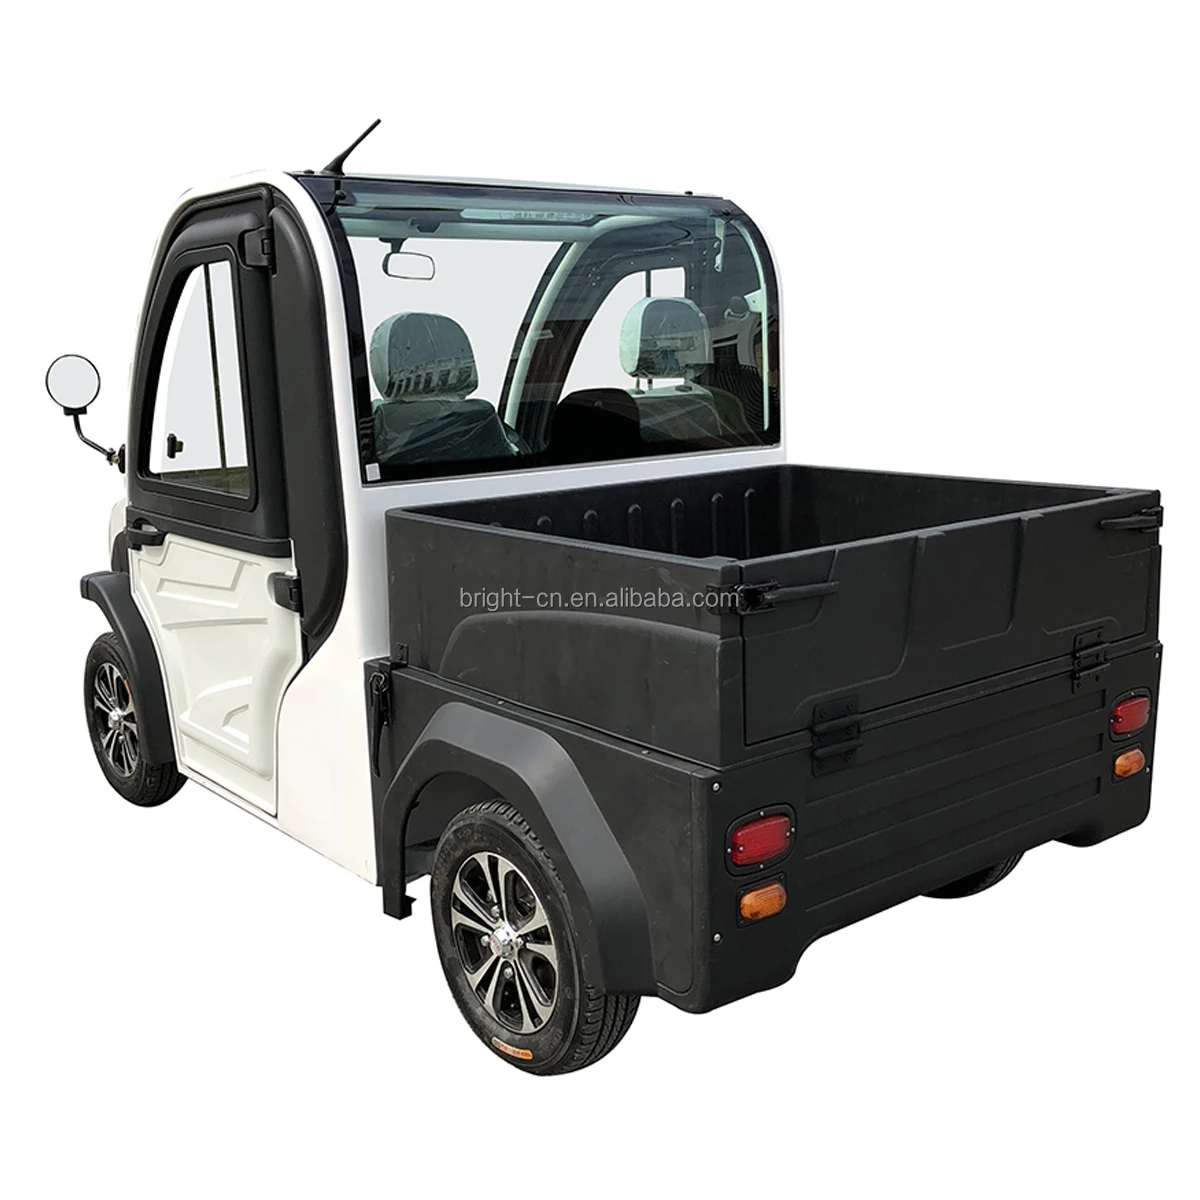 
Полузакрытый электрический грузовик большой грузоподъемности для взрослых/пикап/фургон на продажу 